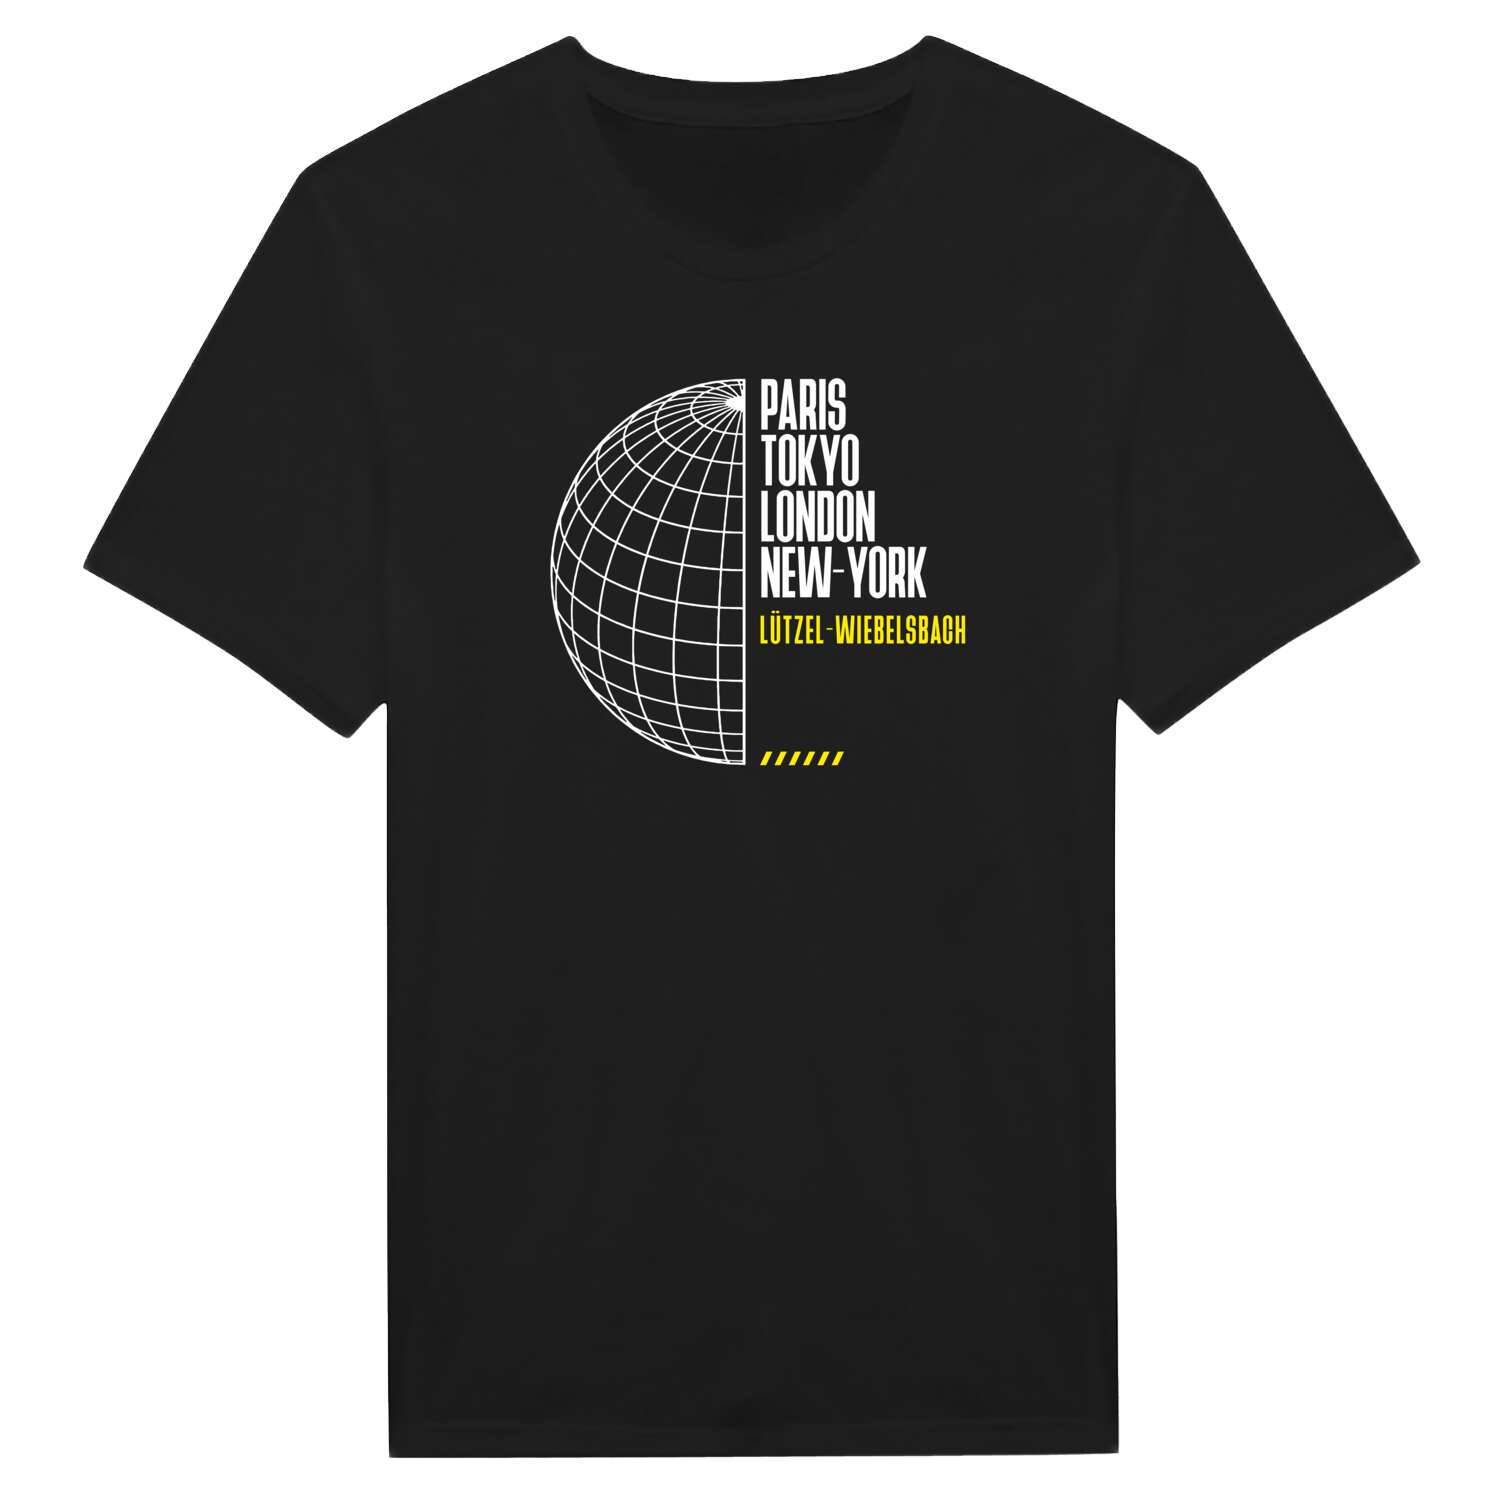 Lützel-Wiebelsbach T-Shirt »Paris Tokyo London«